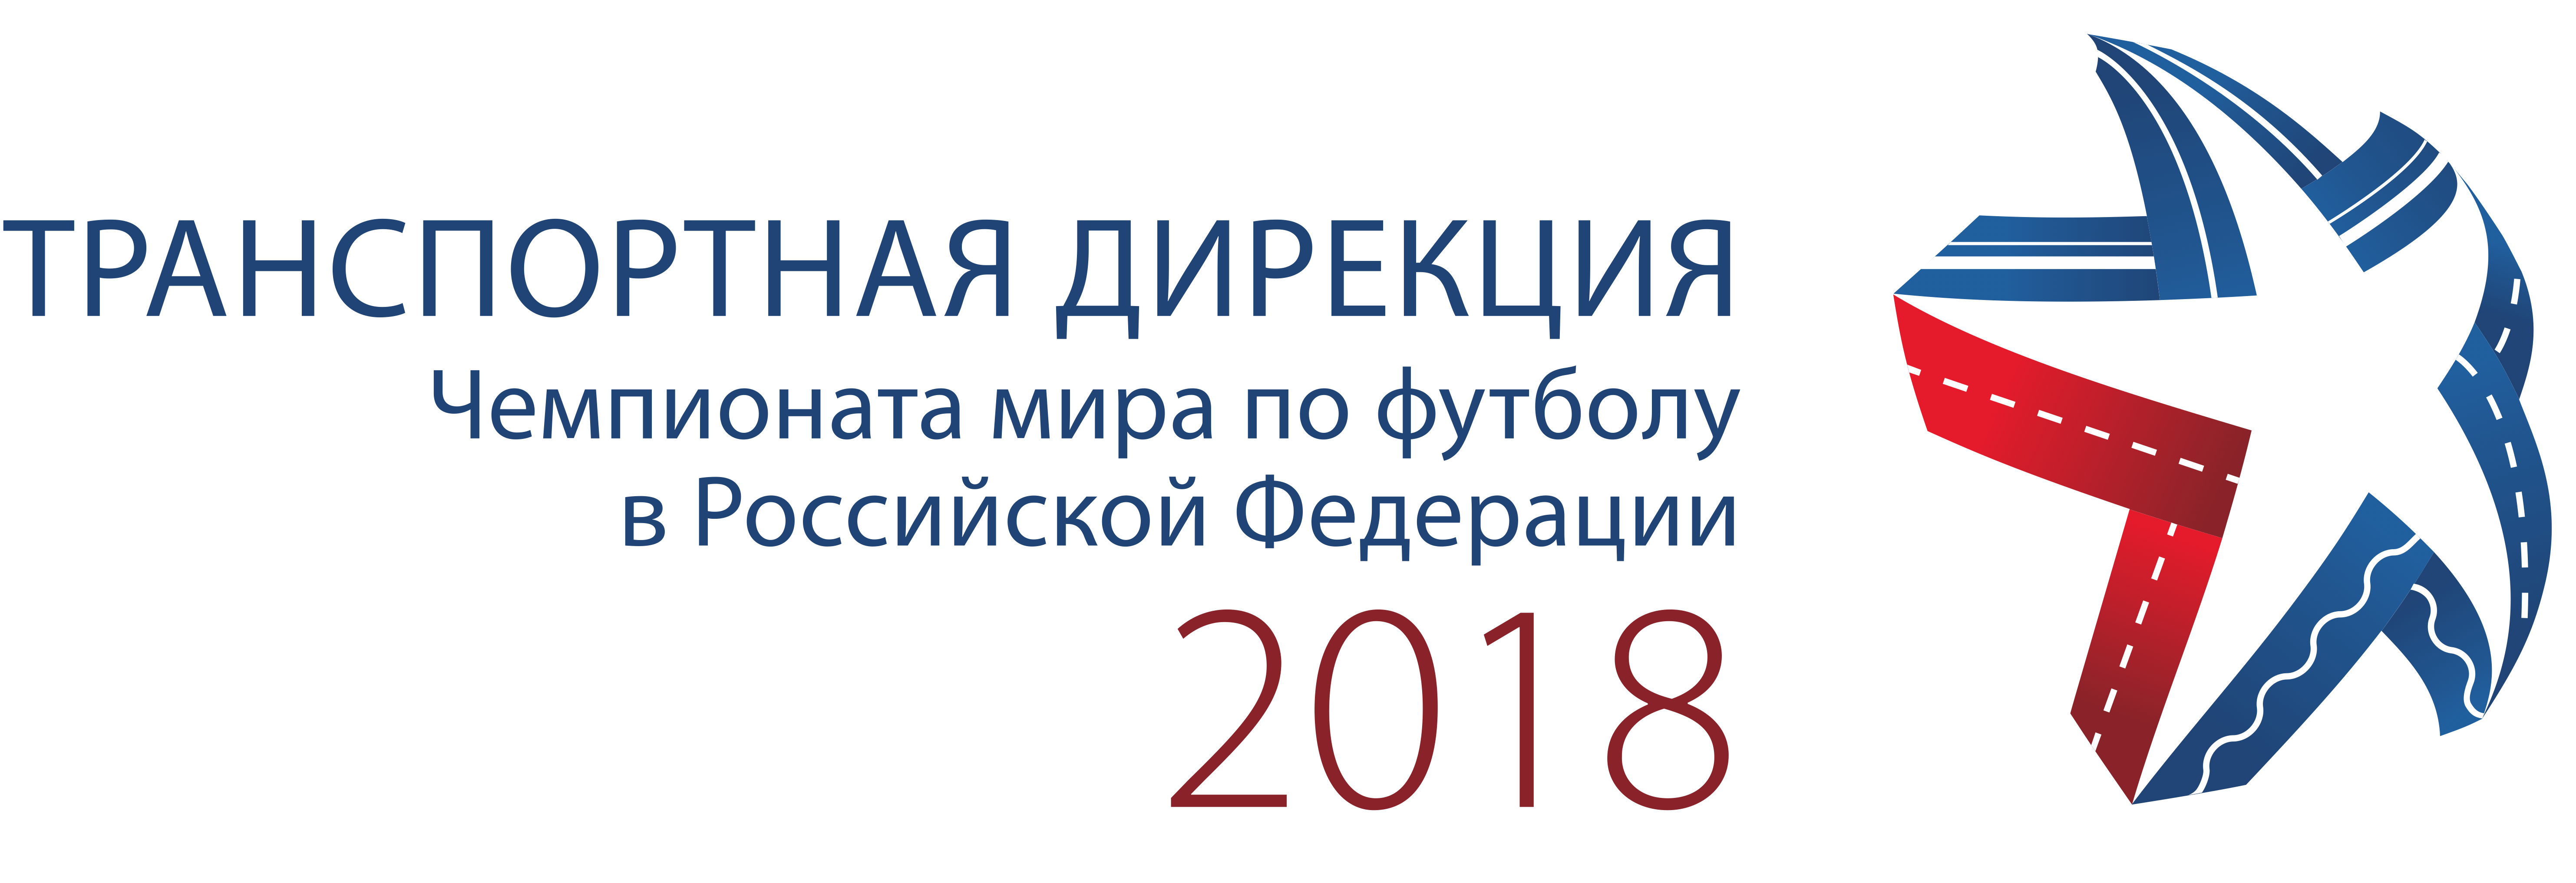 АНО «Транспортная дирекция-2018».